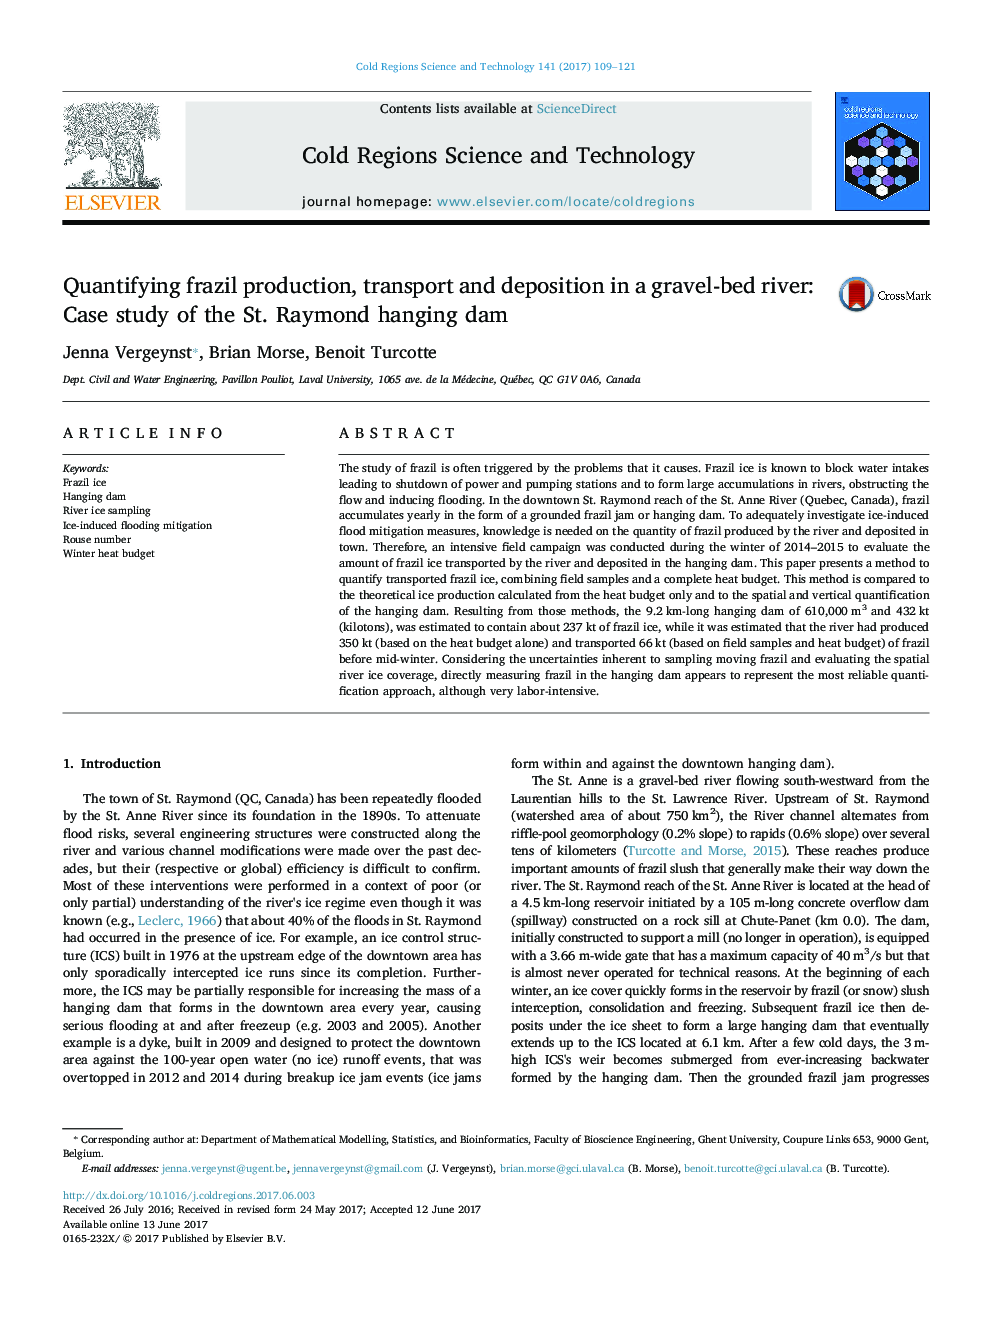 کیفیت تولید، حمل و نقل و رسوبگذاری کریسل در رودخانه سنگ بستر: مطالعه موردی سد حلقوی سنت ریموند